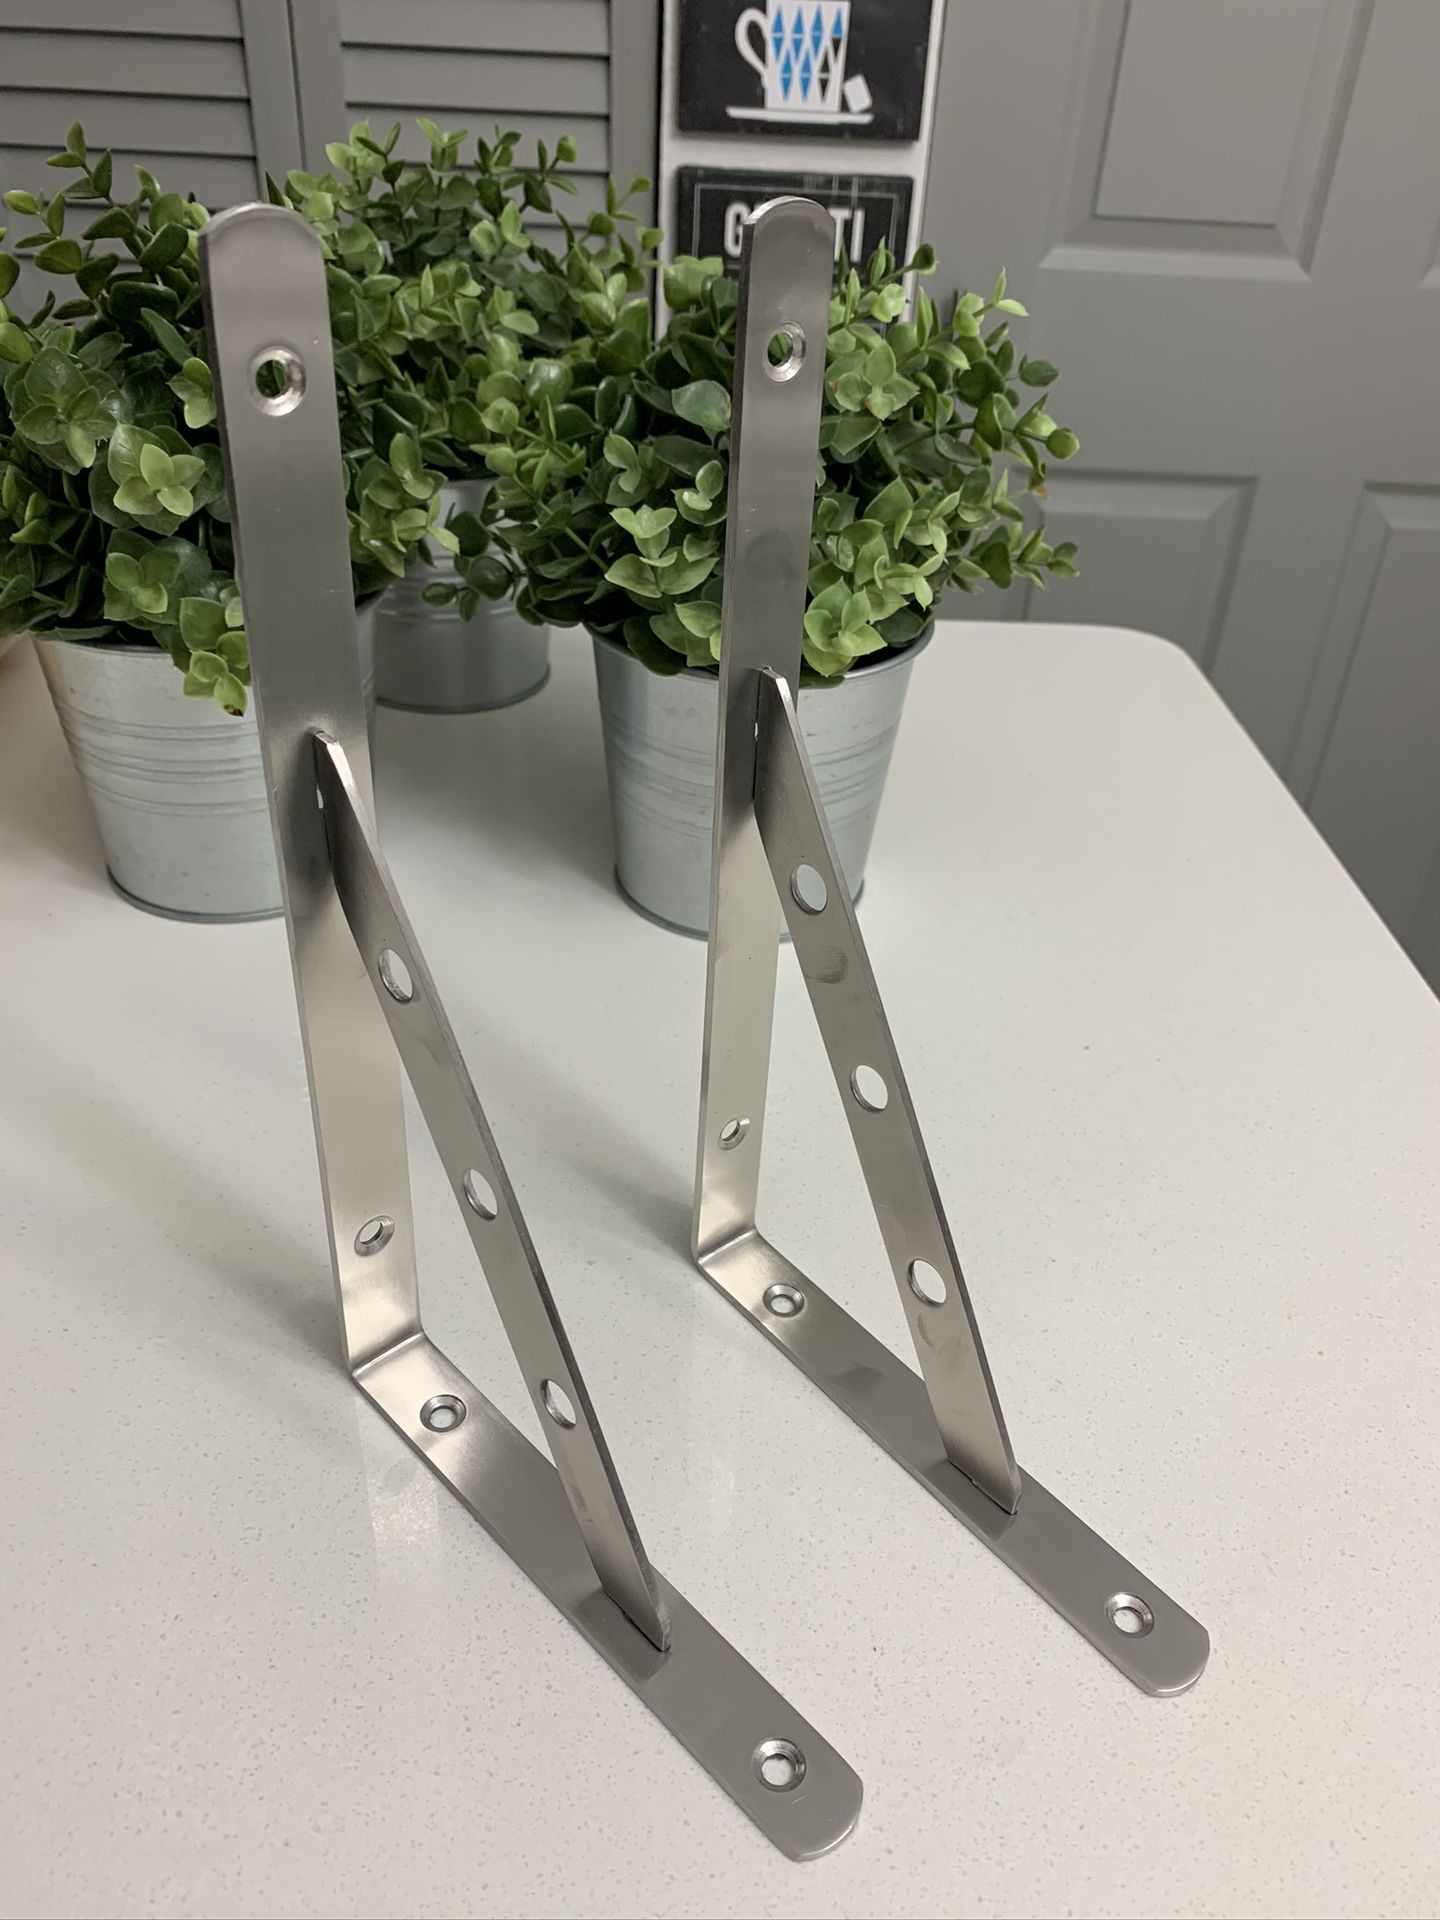 Stainless steel Shelfs brackets 10” x 6” $13 (2)